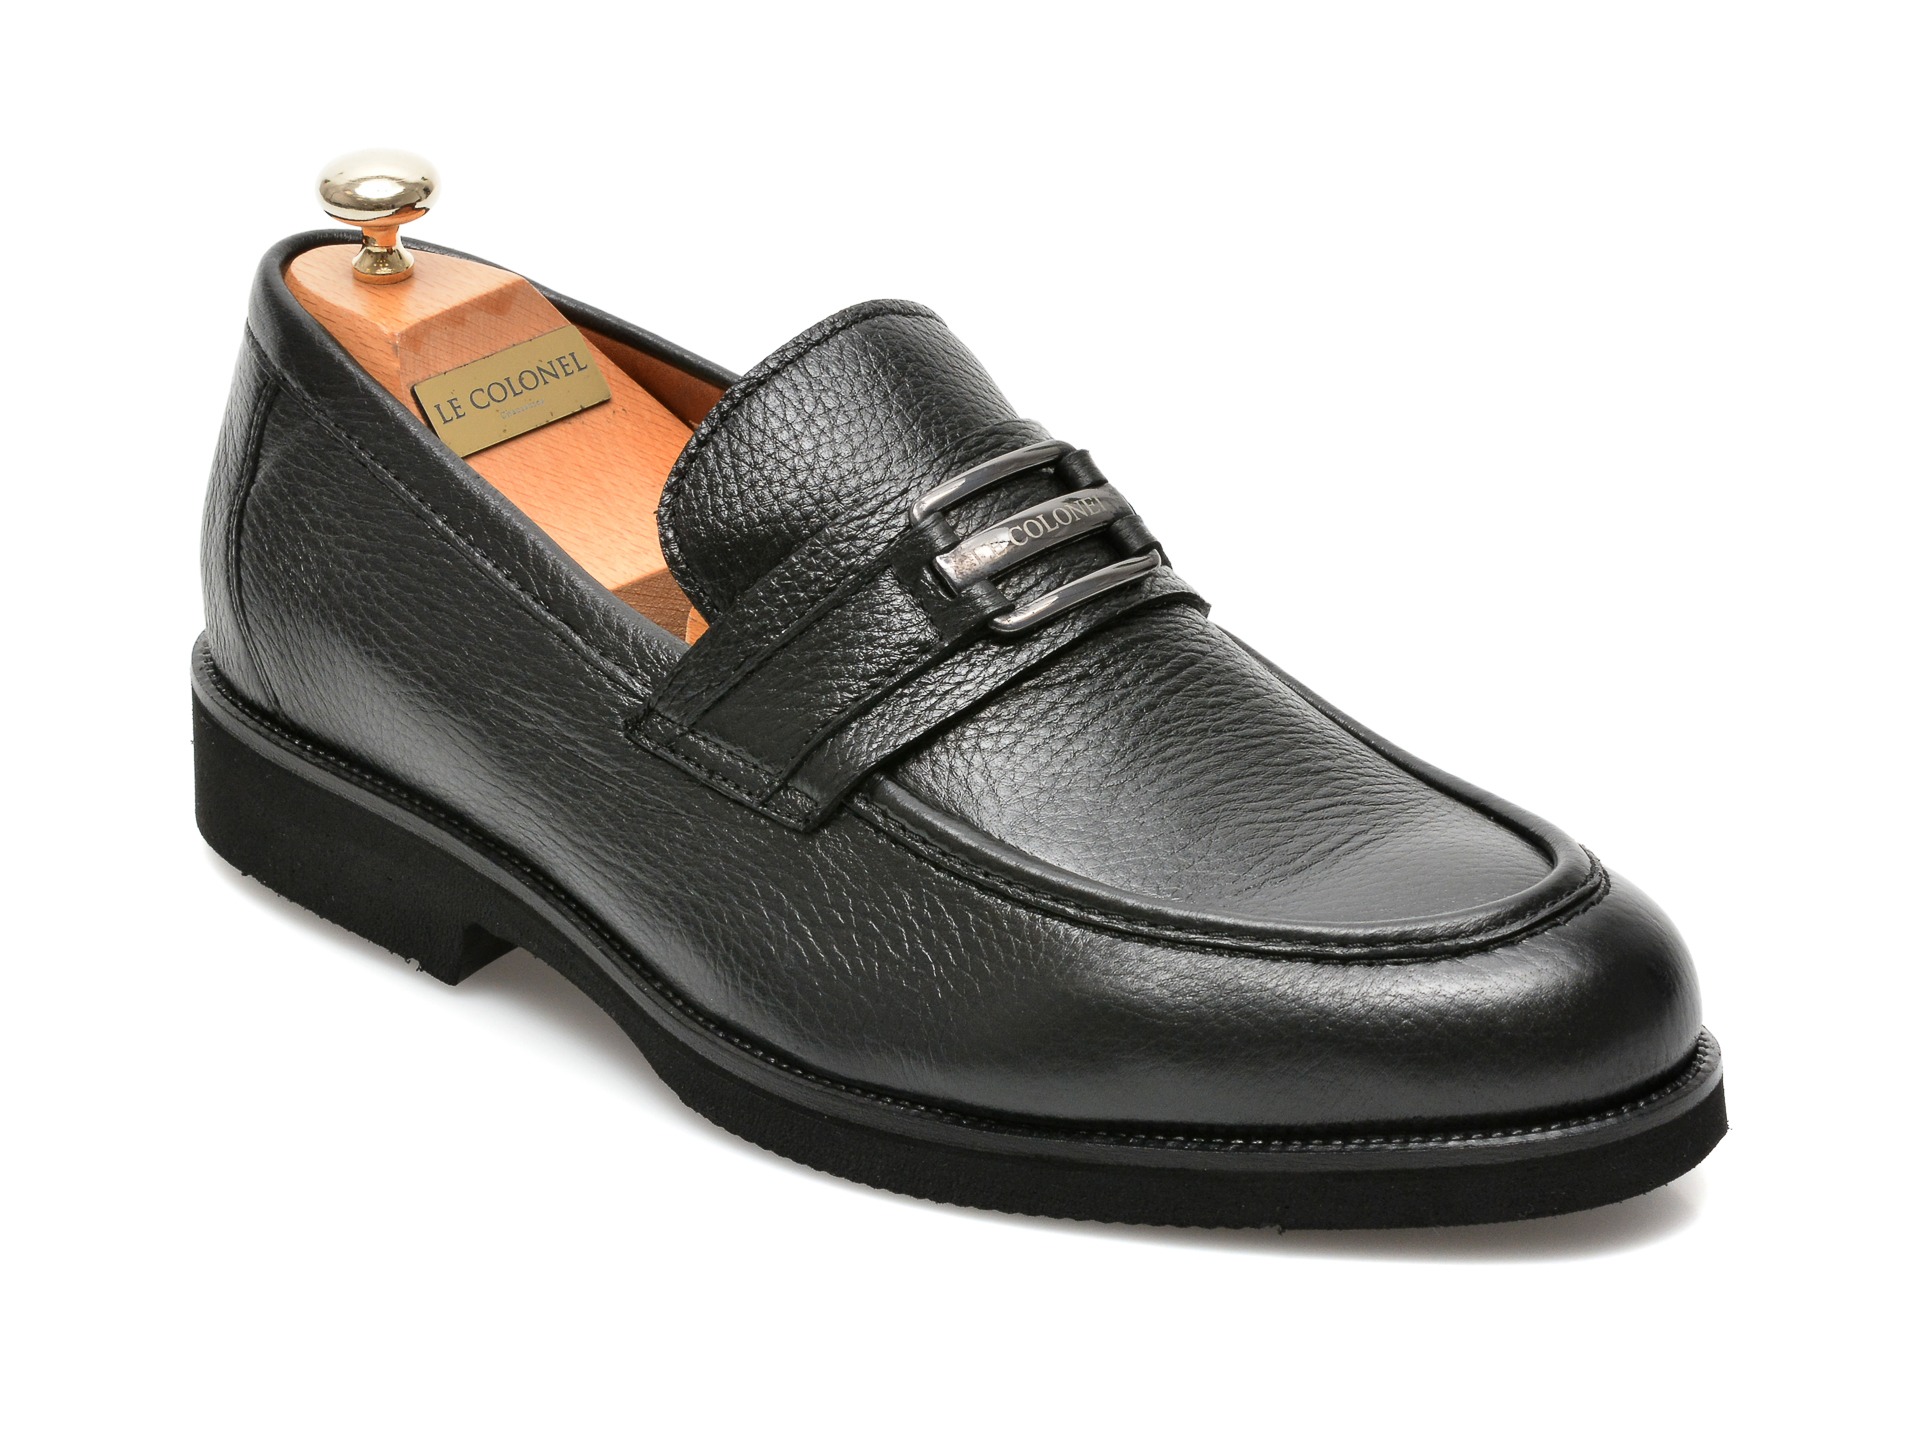 Pantofi LE COLONEL negri, 63914, din piele naturala Le Colonel imagine 2022 reducere